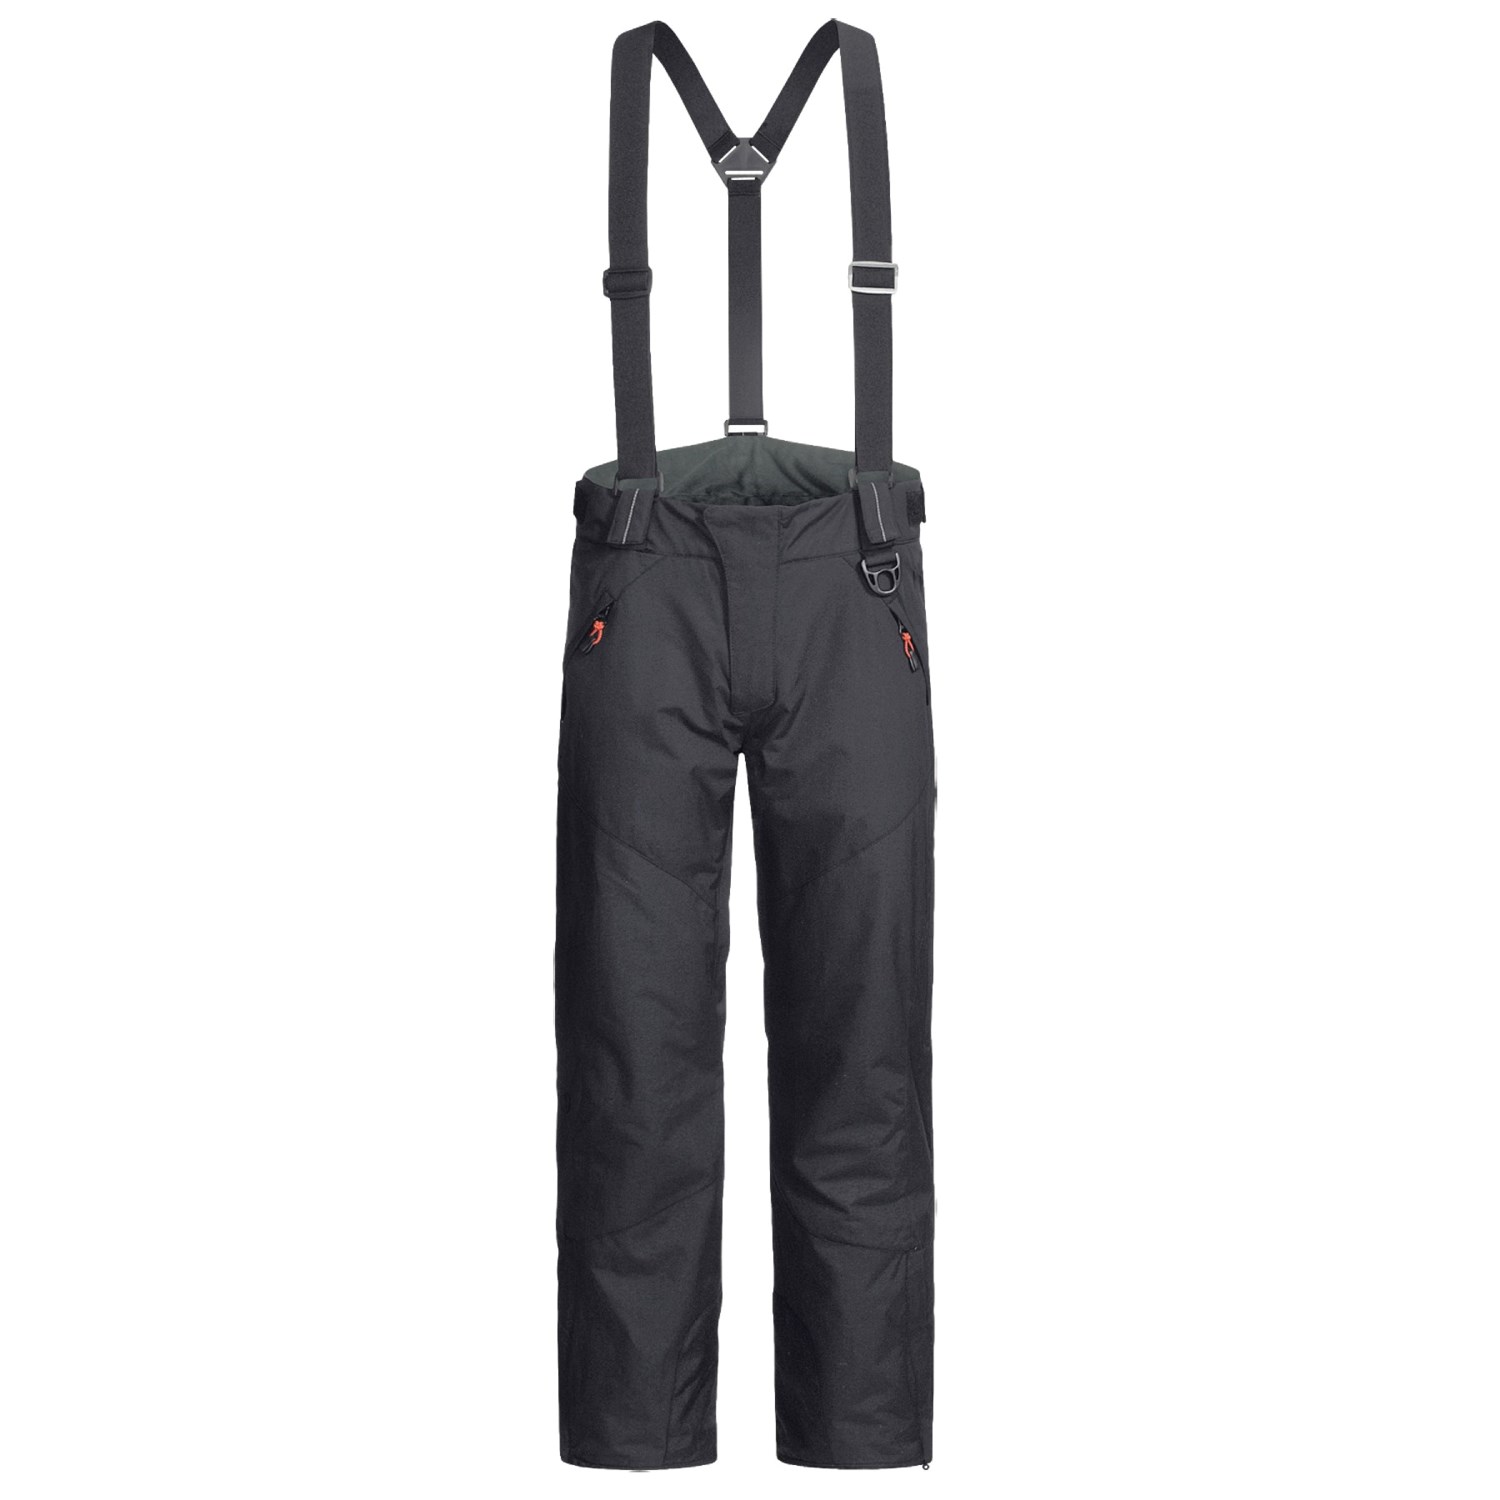 Marker USA Detach Suspender Pants (For Men) 2335C - Save 35%